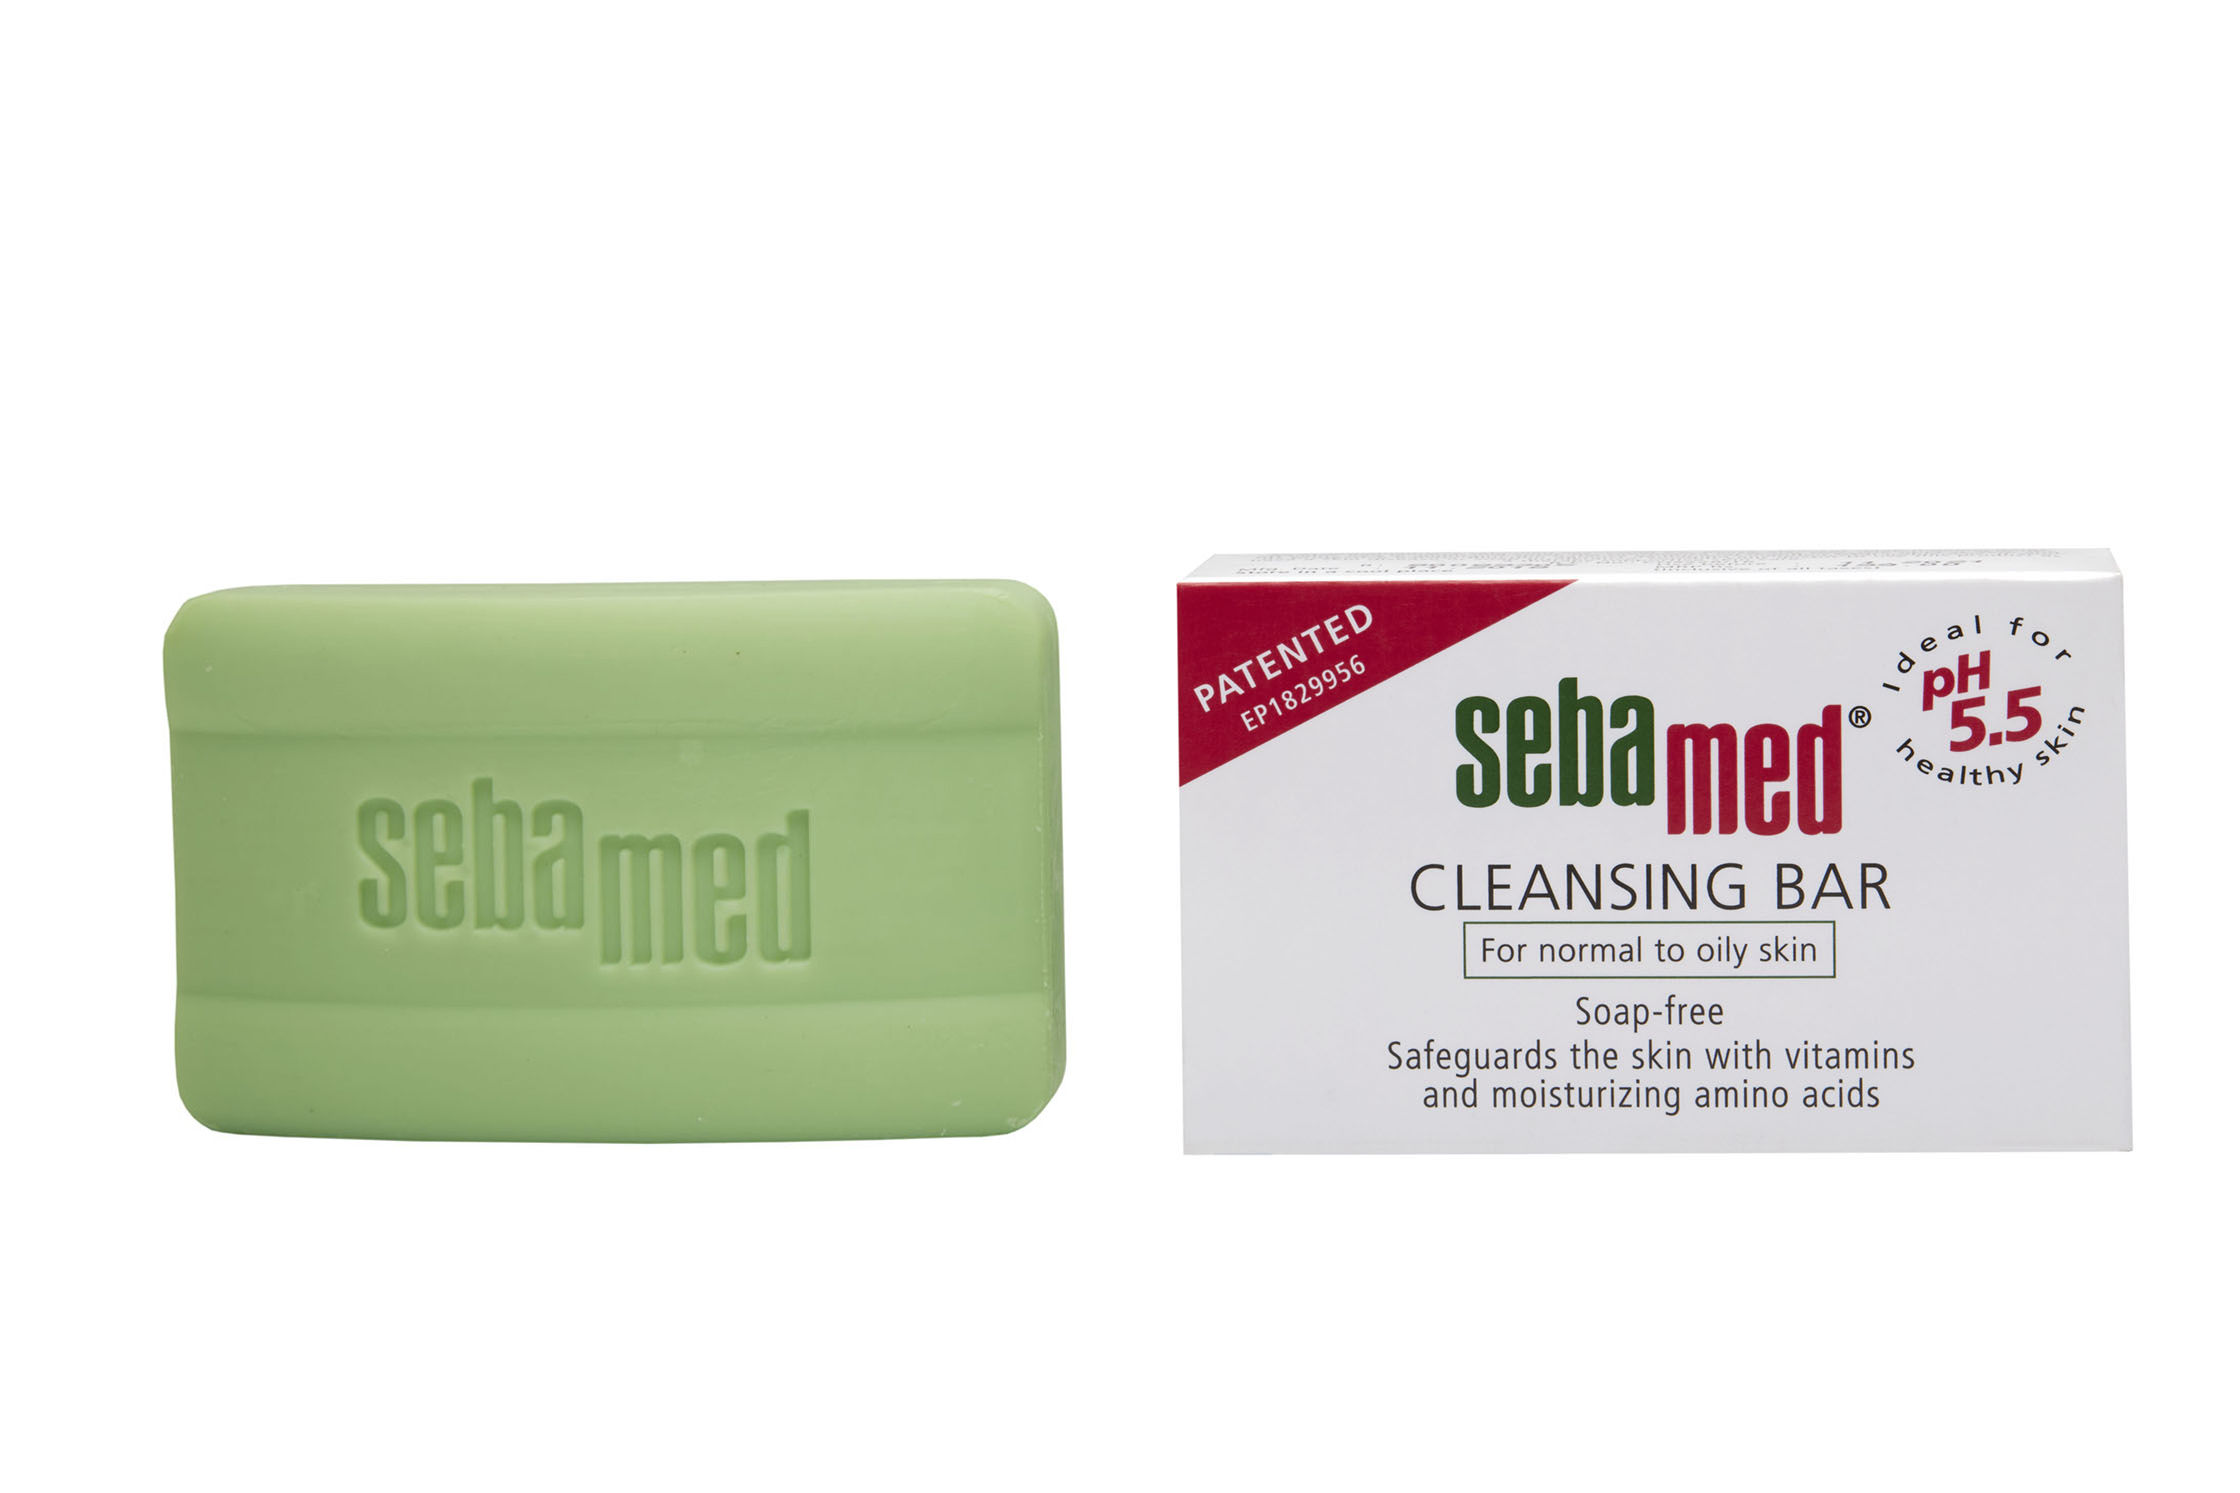 Sebamed Cleansing Bar PH 5.5